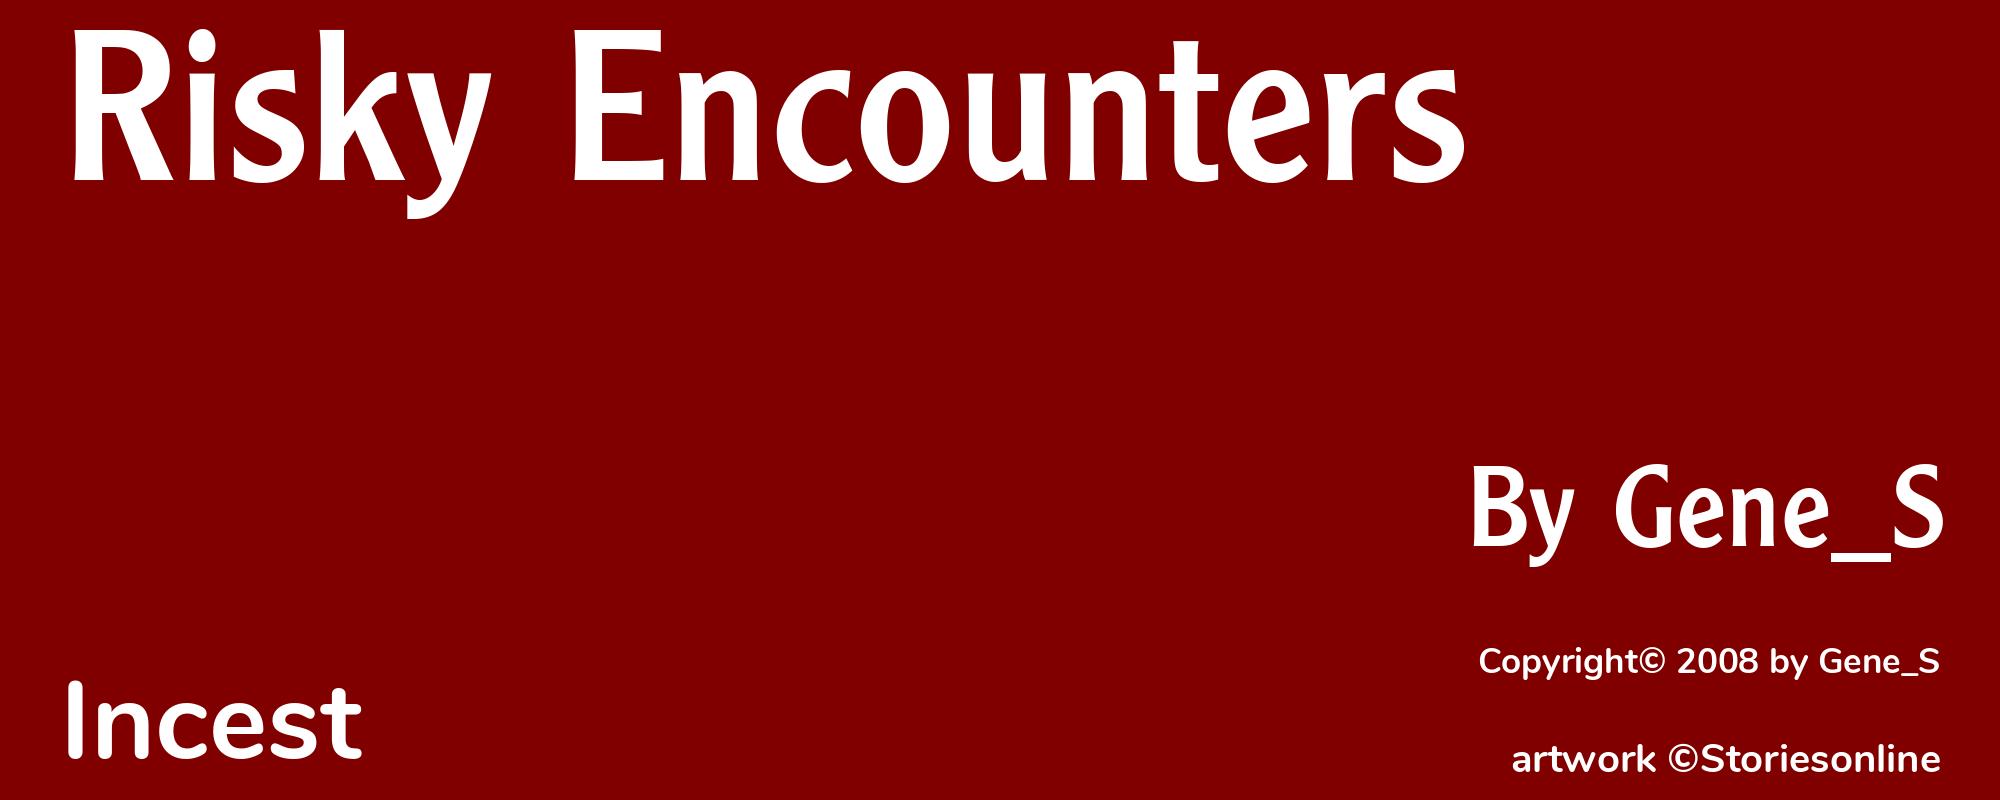 Risky Encounters - Cover